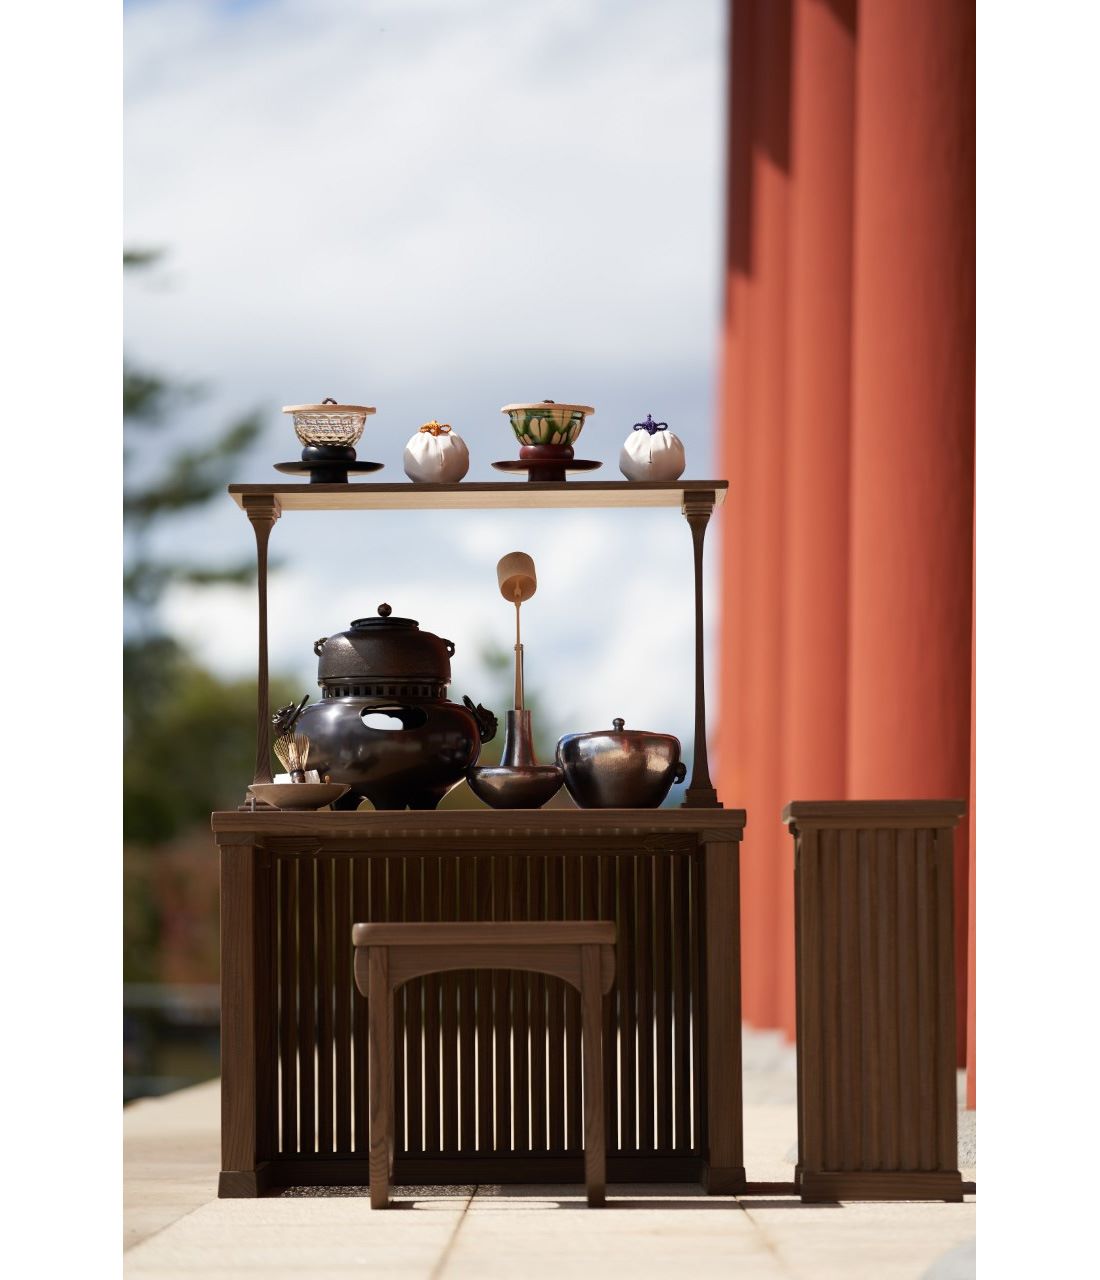 興福寺中金堂落慶法要献茶道具一式。Photography by Tadayuki Minamoto